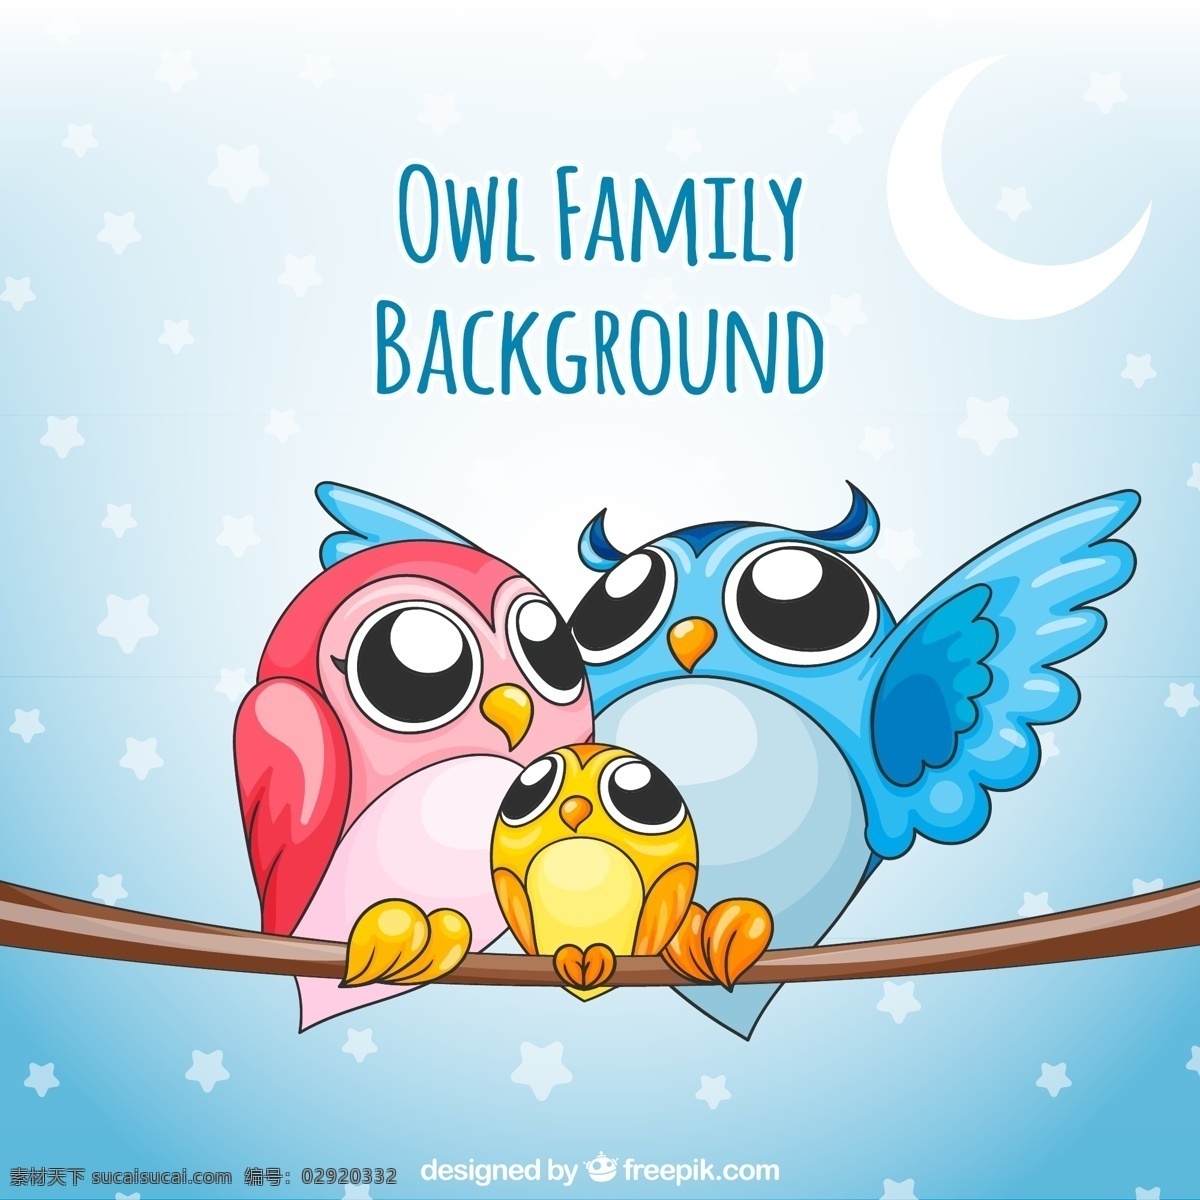 一脚 三口 彩色 鸟类 家庭 元素 设计素材 创意设计 动物 小动物 卡通 可爱 矢量素材